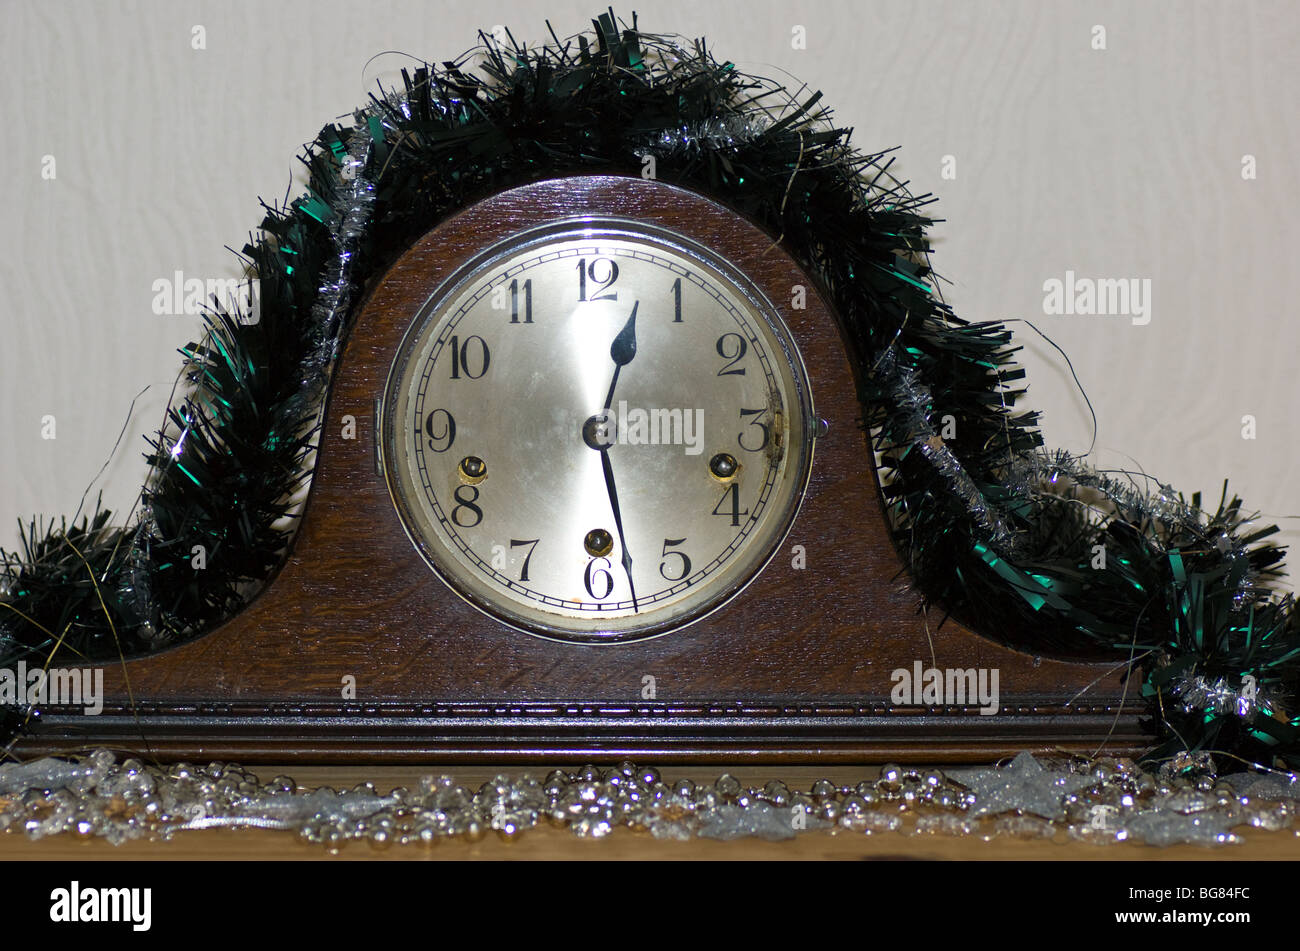 Napoleon Hat Uhr Stockfotografie - Alamy